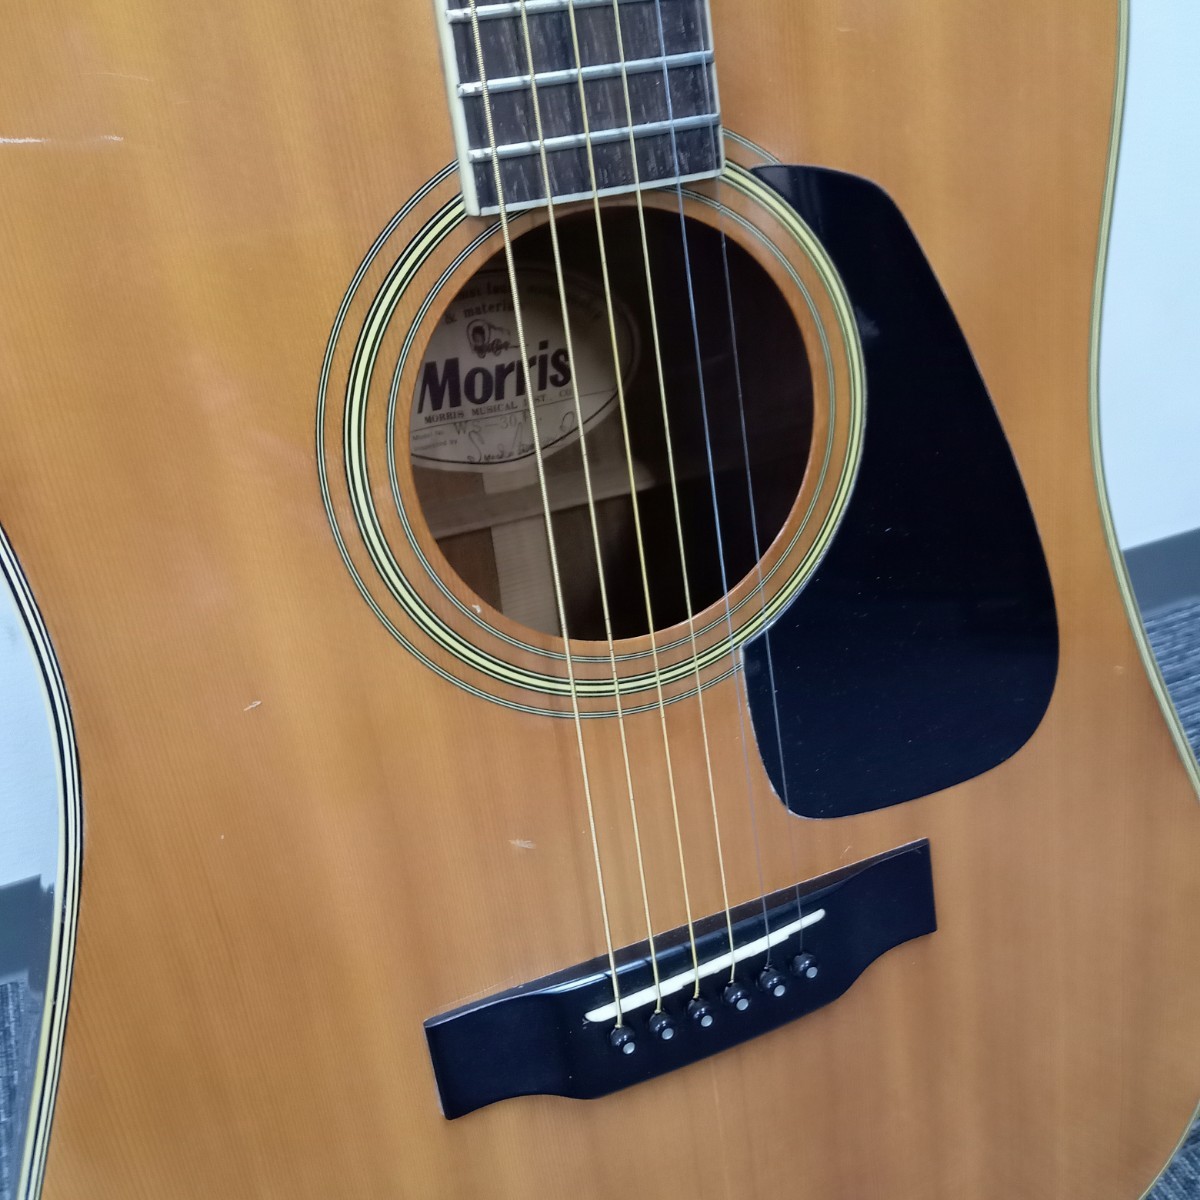 曽我部1月No.25 ギター Morris モーリス WS-30E 弦楽器 楽器 ハードケース付き アコースティックギター アコギ 音楽 器材_画像6